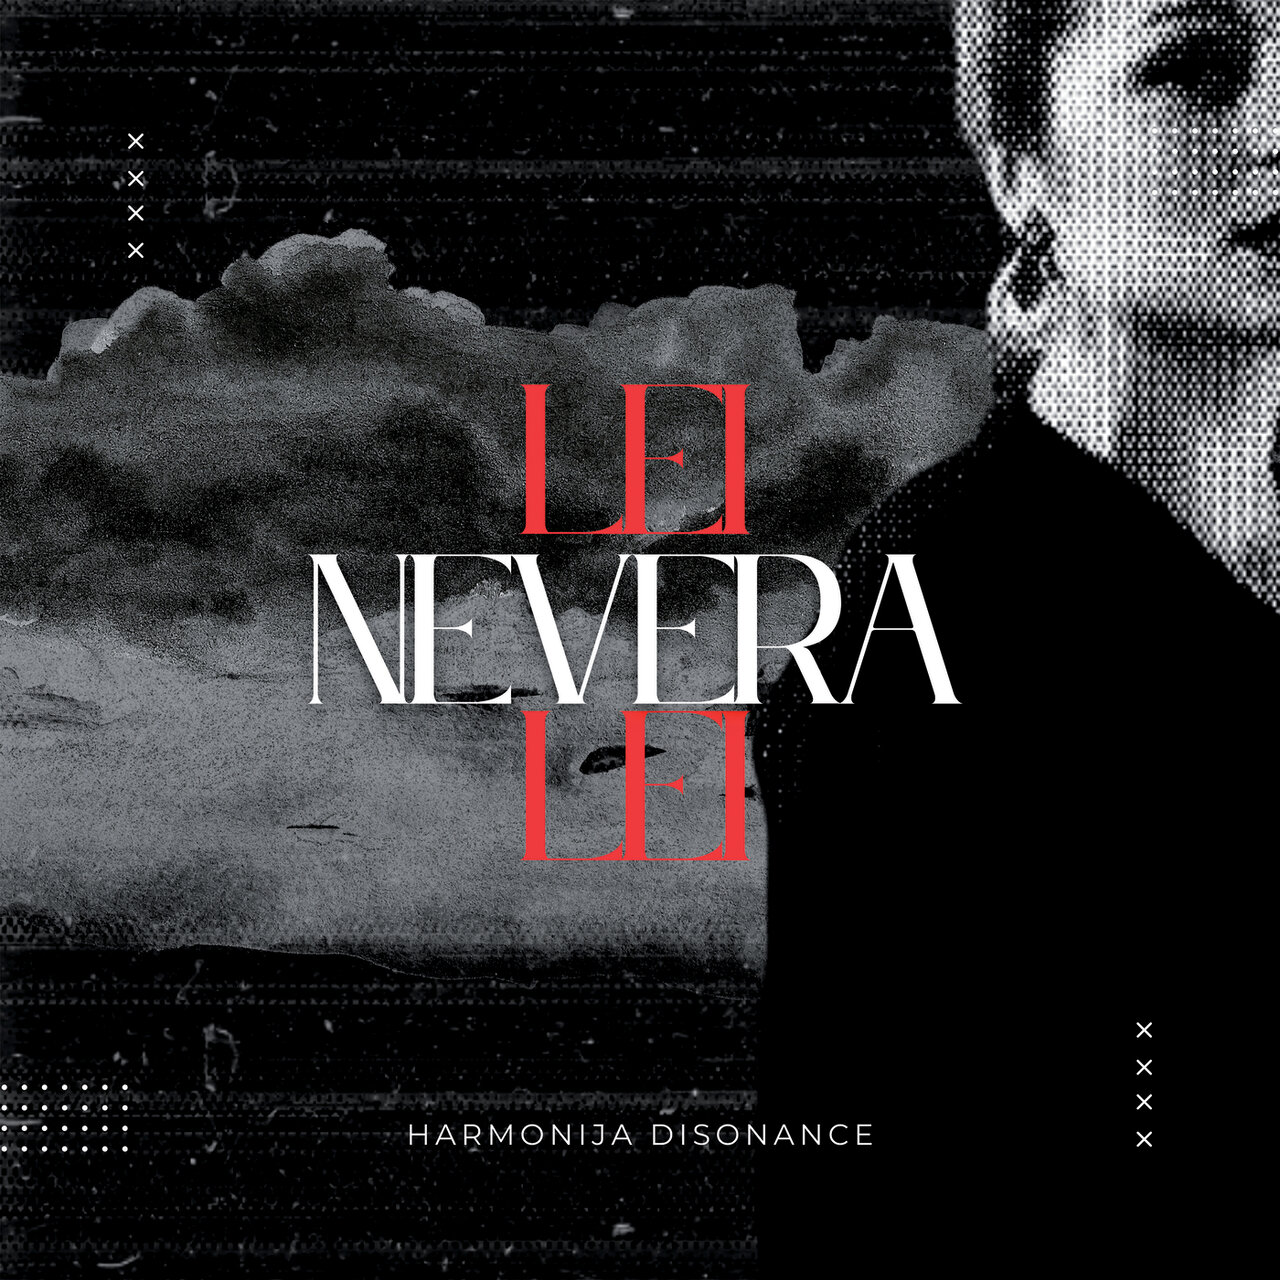 Harmonija disonance — Nevera (Lei, lei) cover artwork